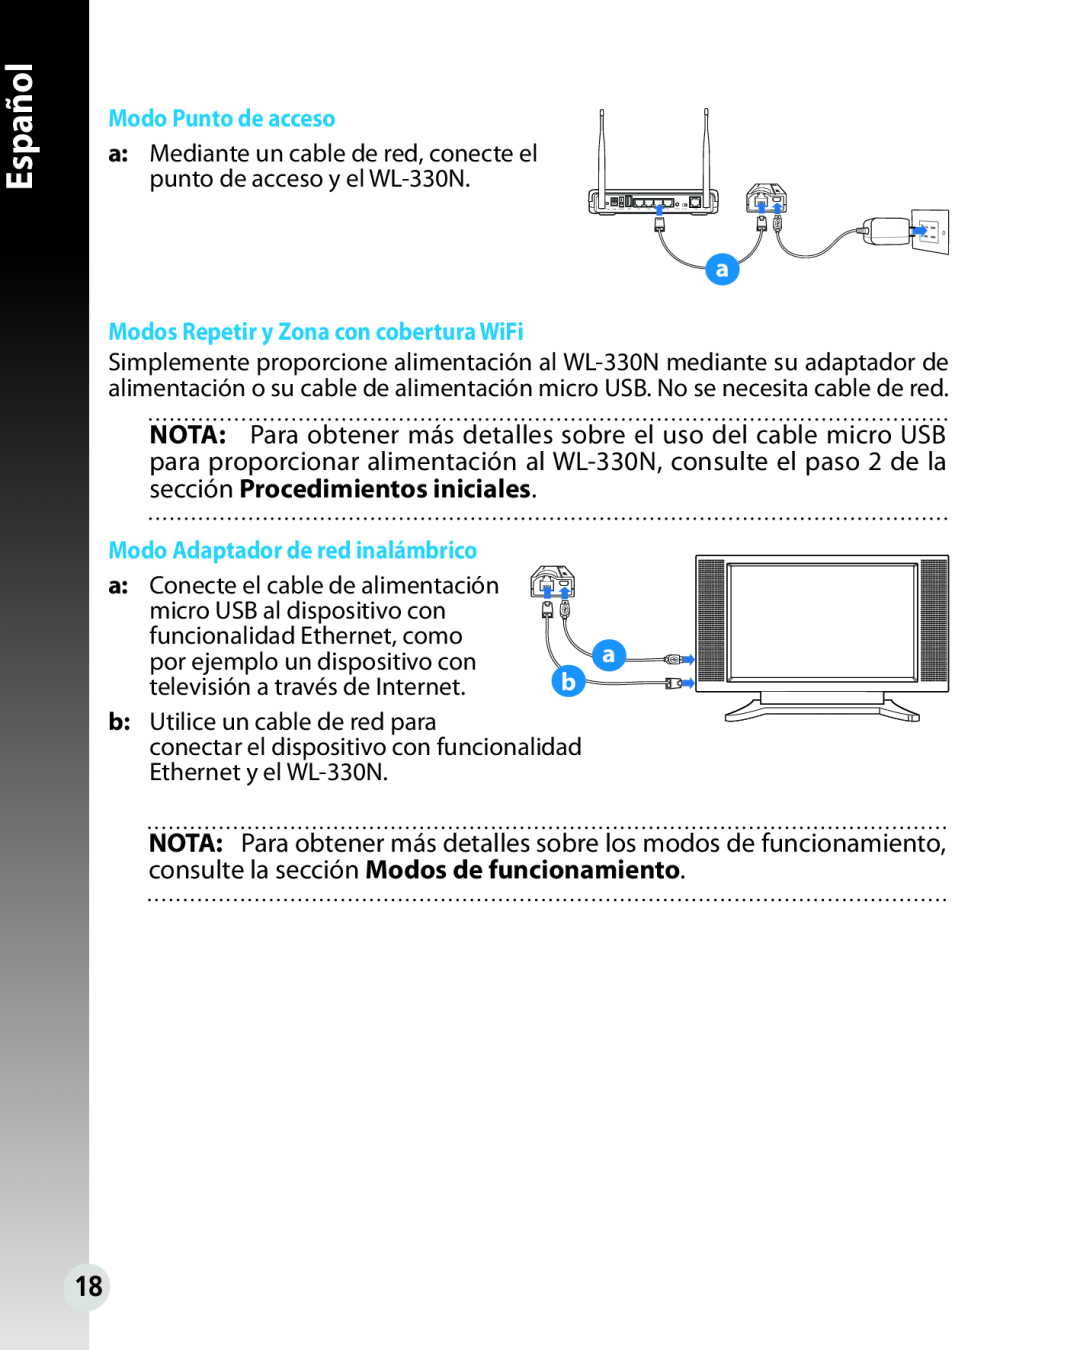 Asus WL330N quick start Modo Punto de acceso, Modos Repetir y Zona con cobertura WiFi, Español, English 